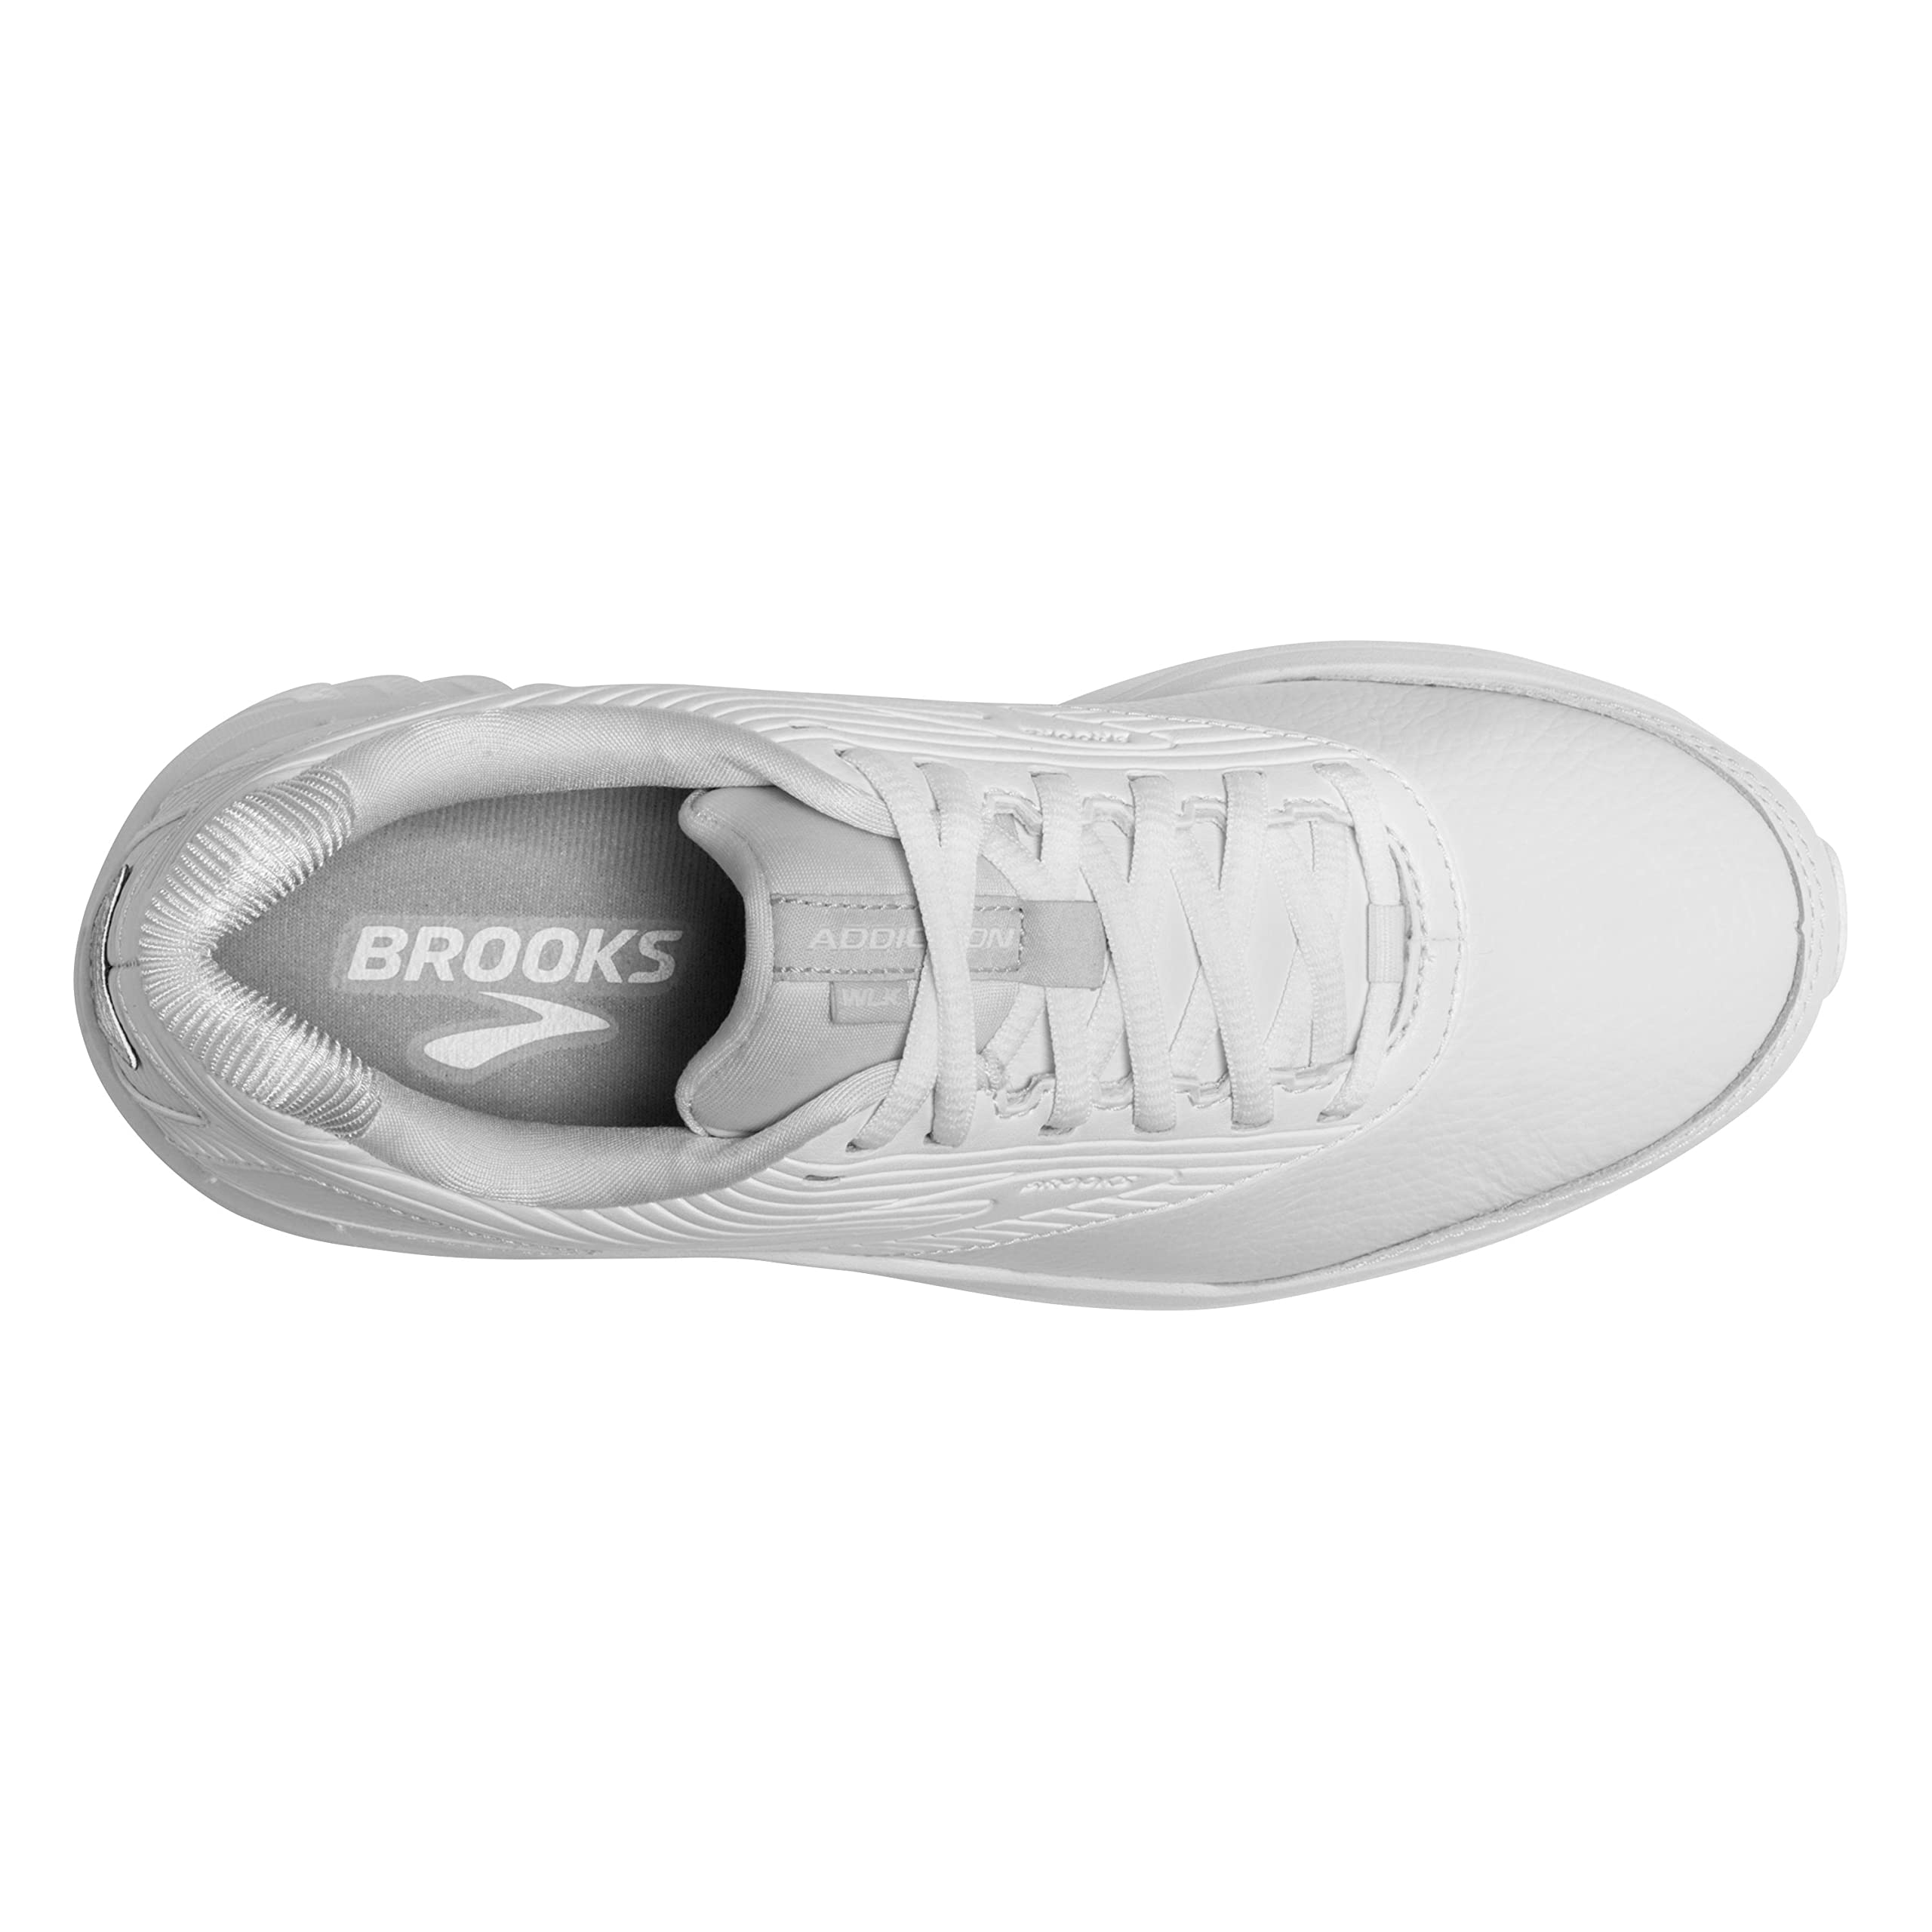 Brooks Women's Addiction Walker 2 Walking Shoe